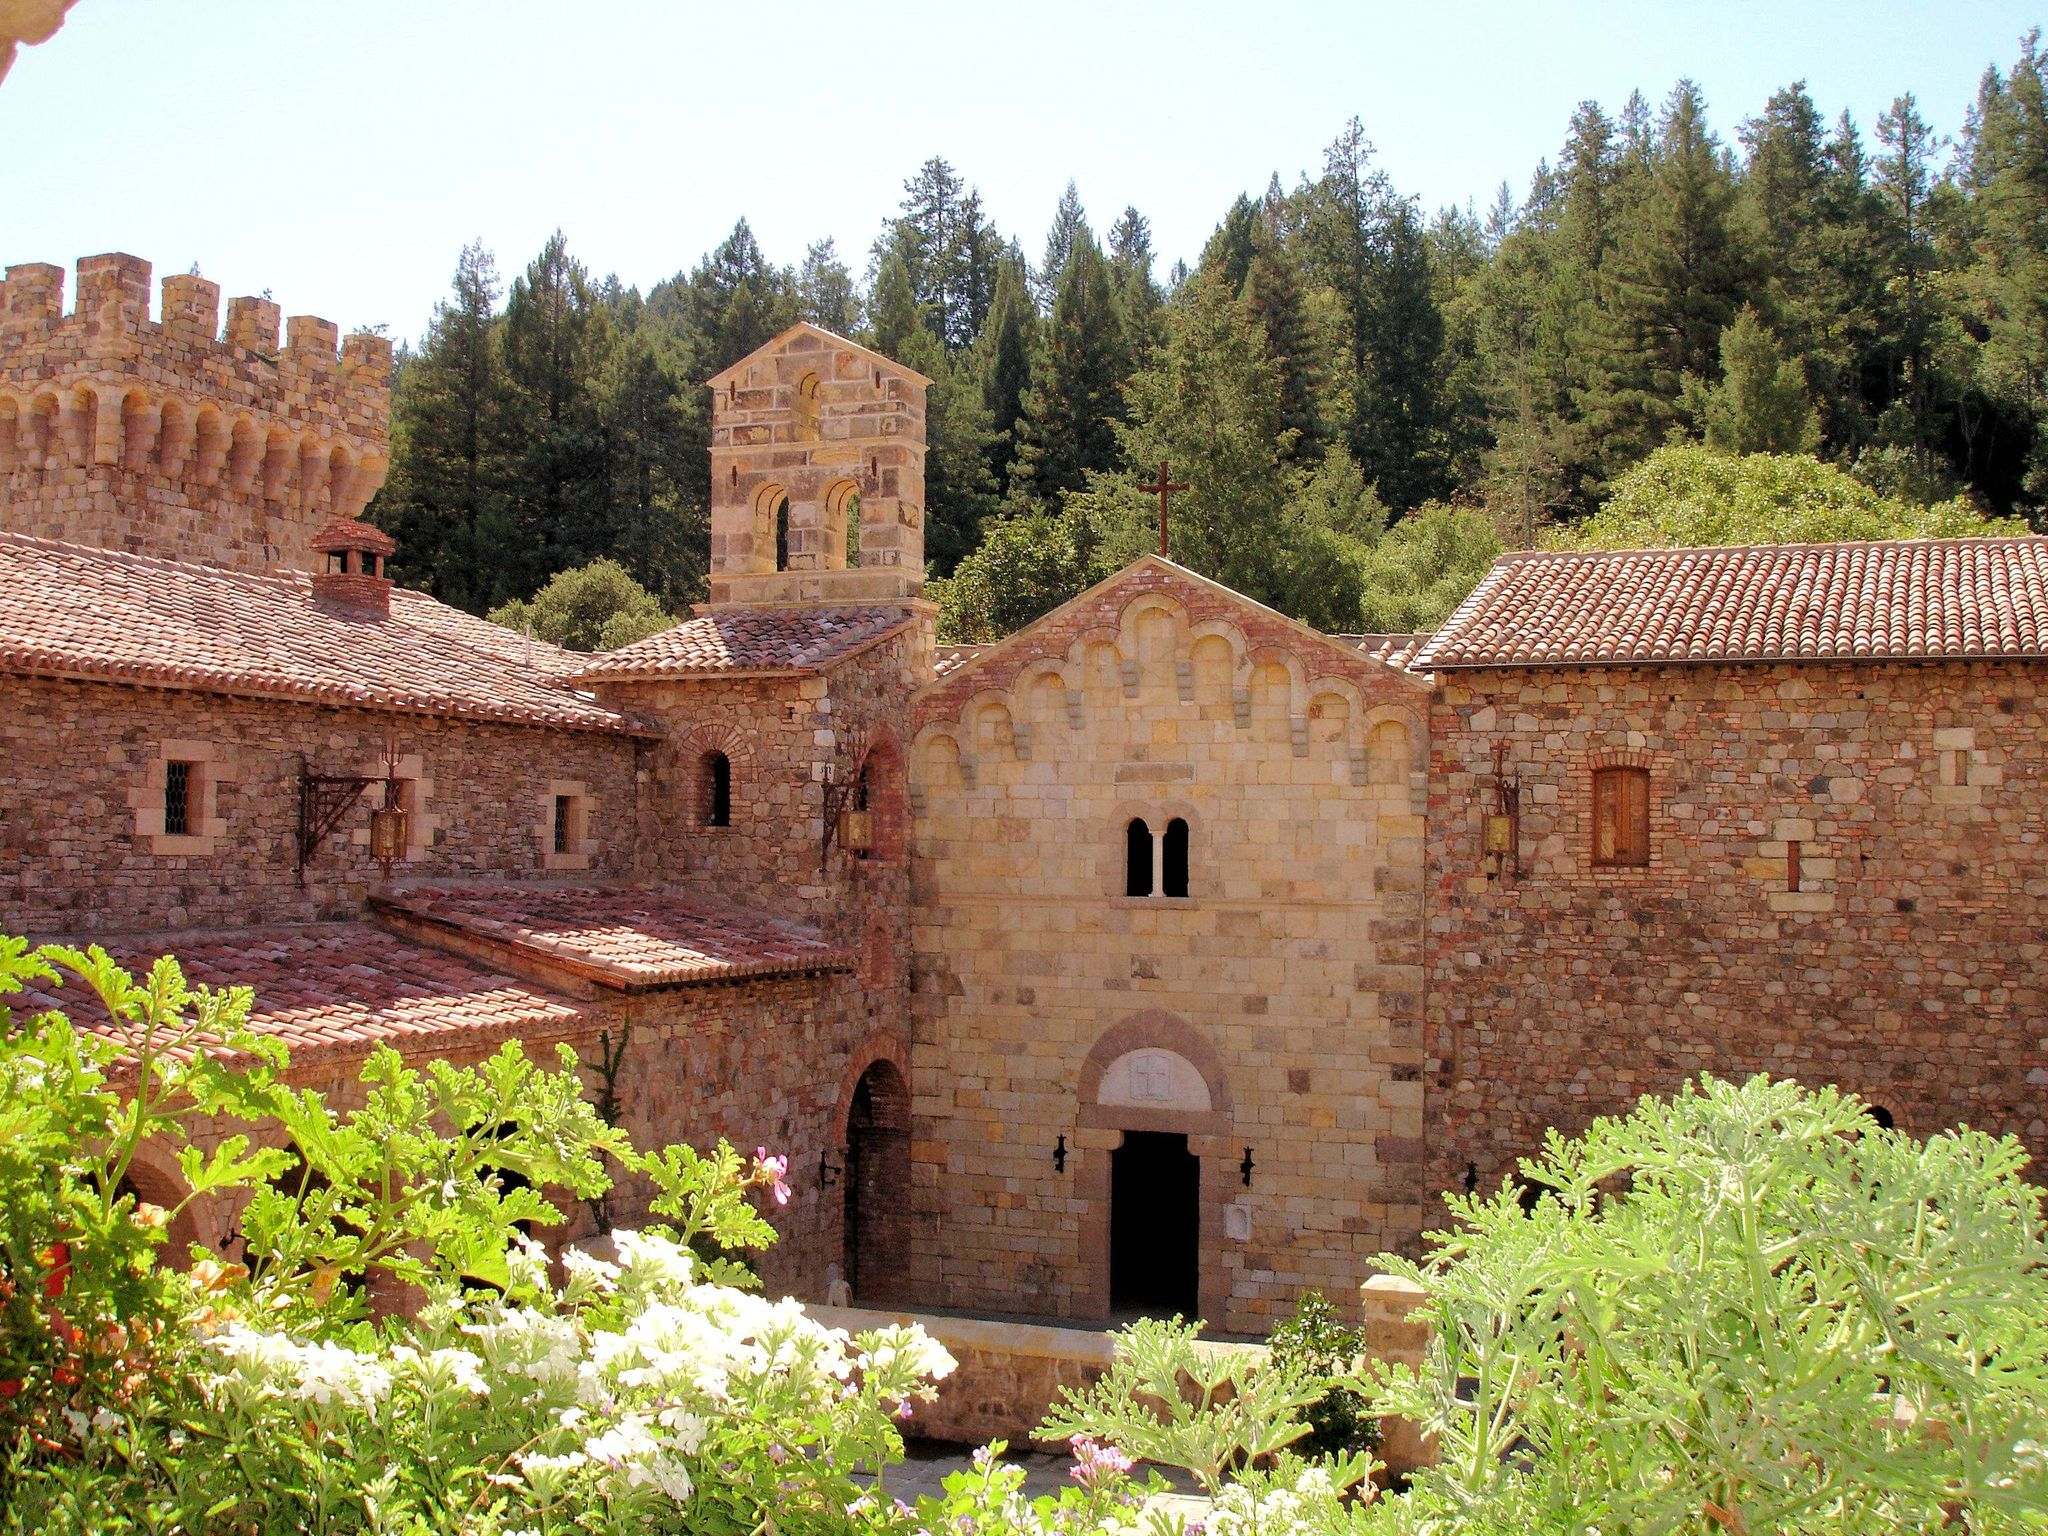 castello di amorosa9 Castello di Amorosa Winery in Napa Valley, California